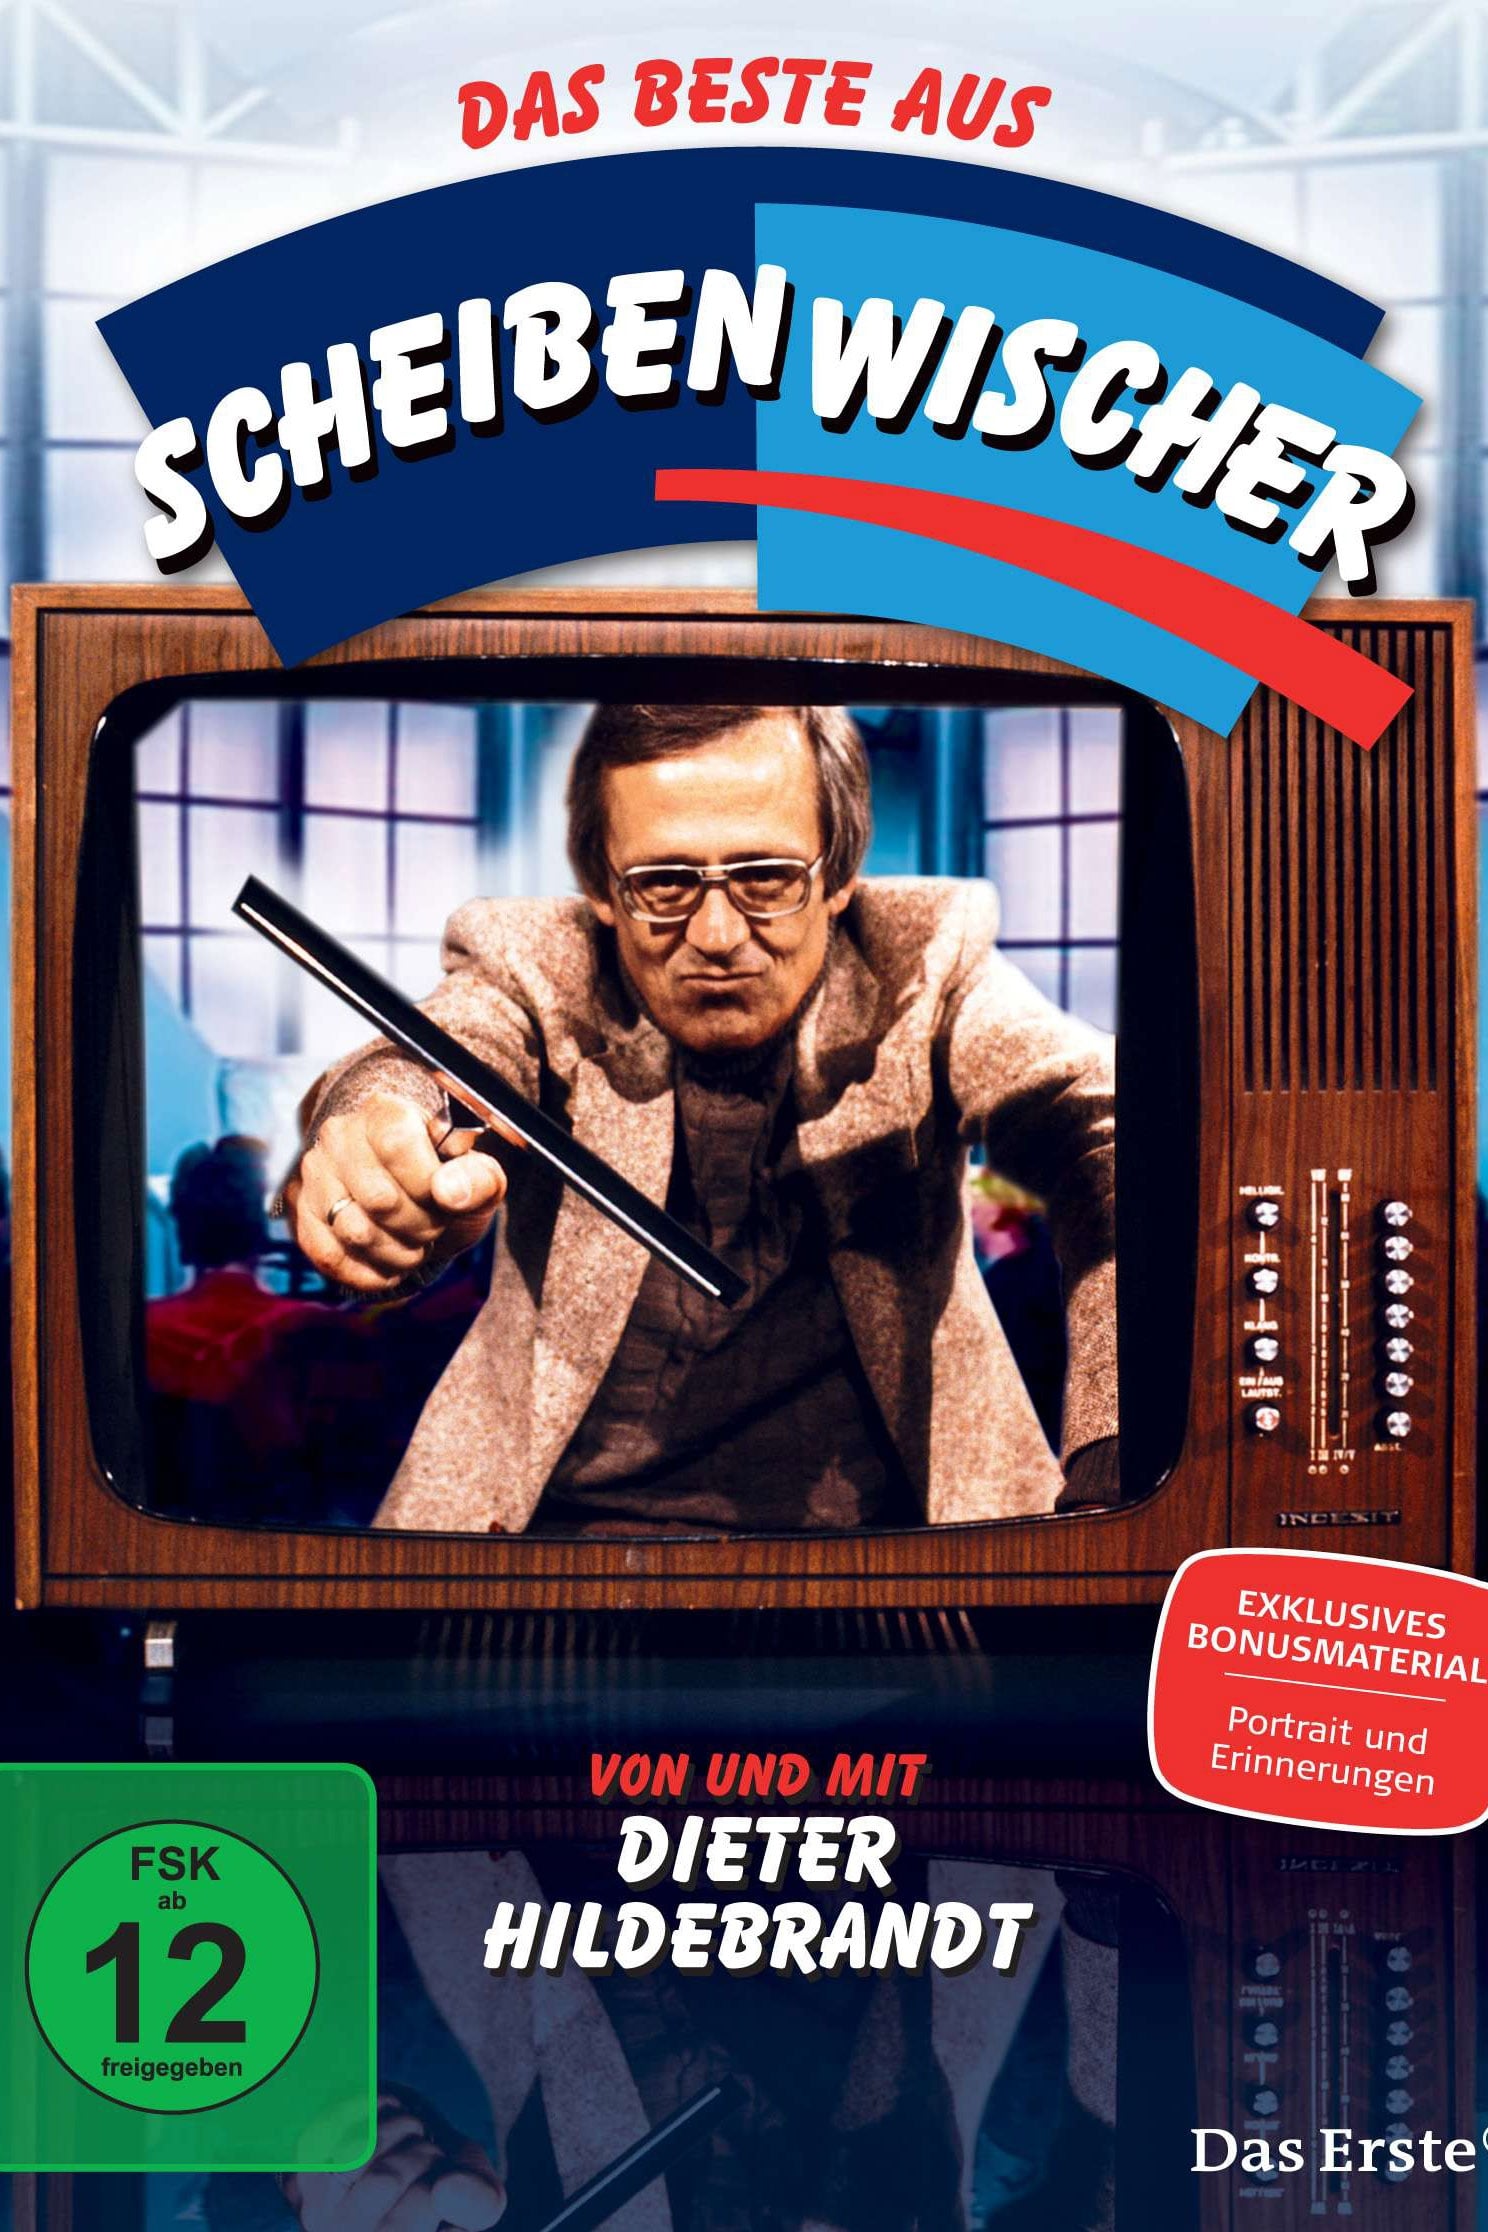 Scheibenwischer TV Shows About Cabaret